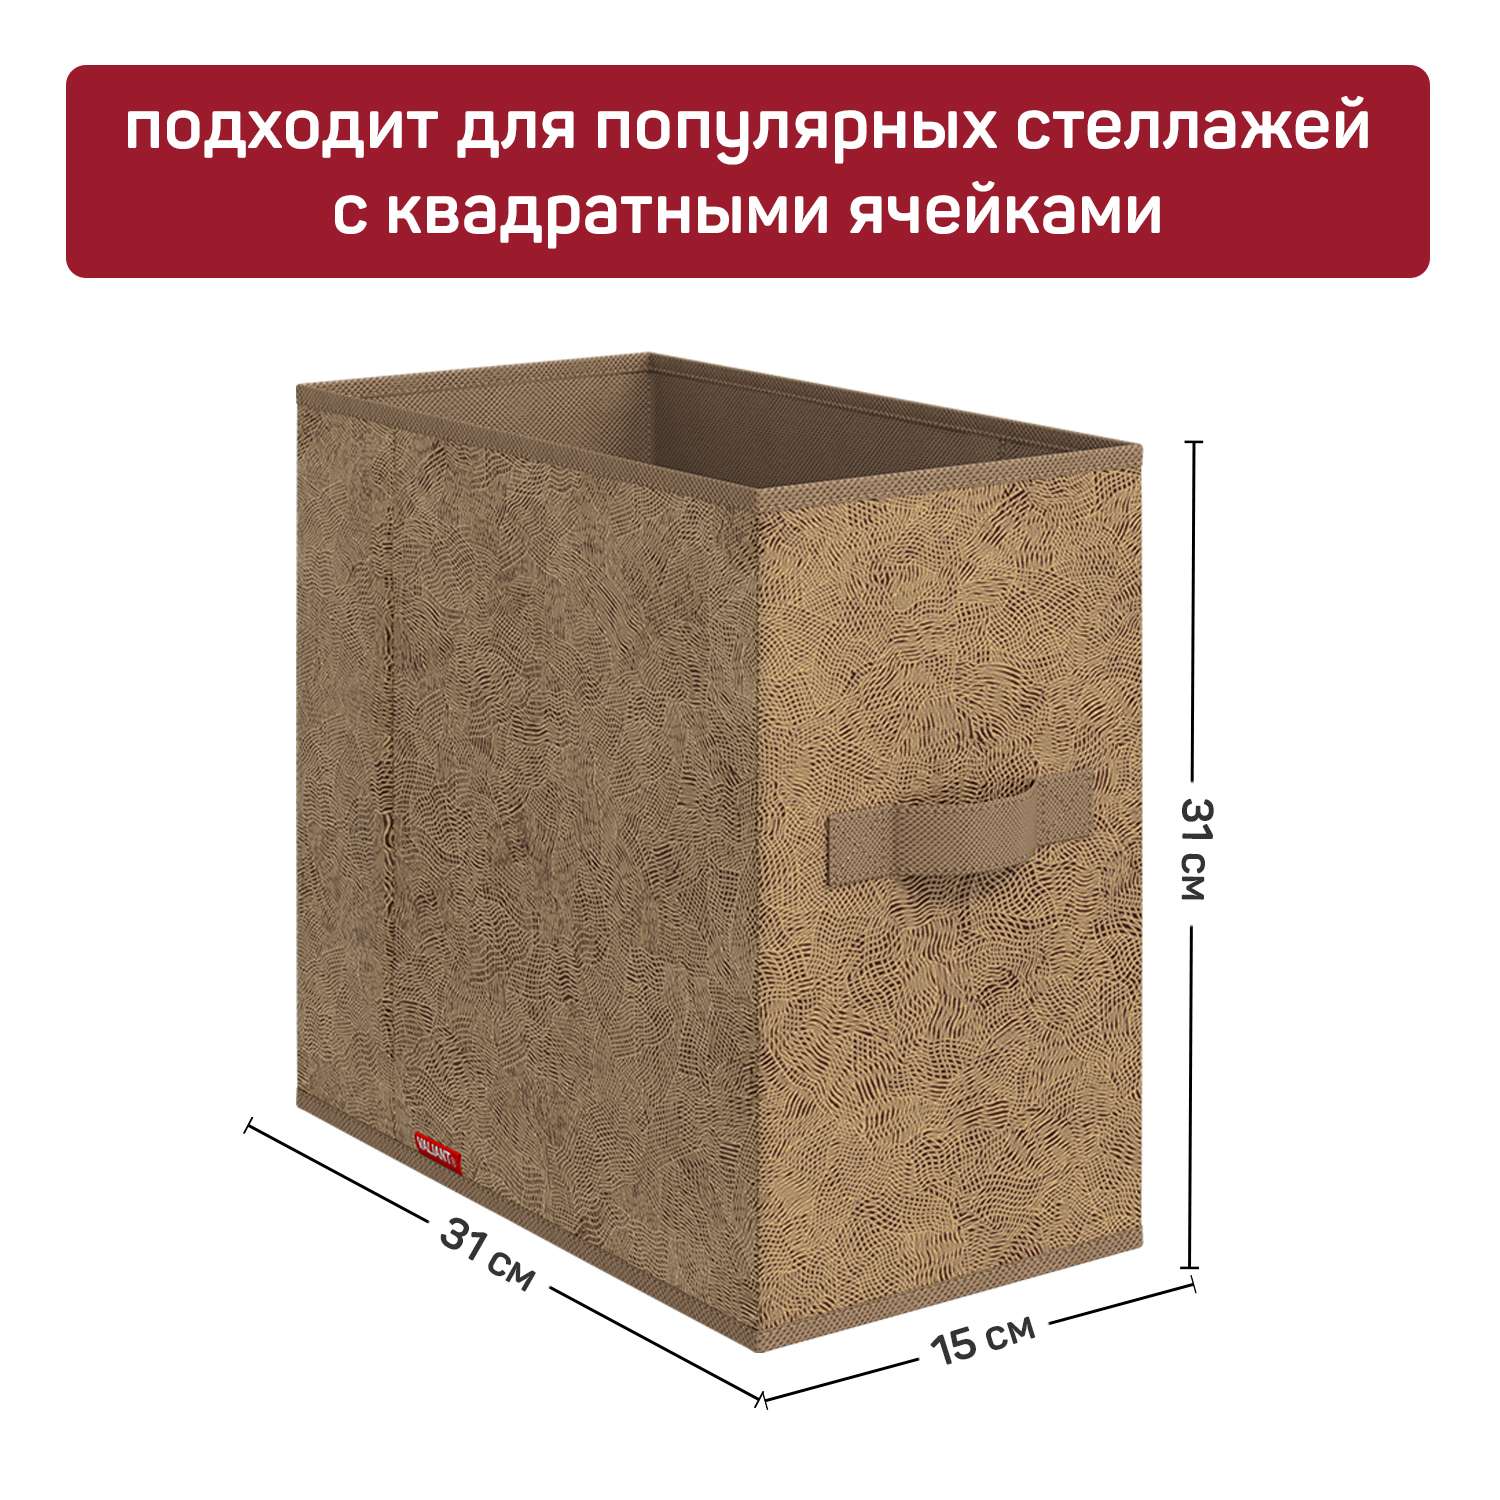 Короб стеллажный VALIANT 15*31*31 см набор 4 шт - фото 3